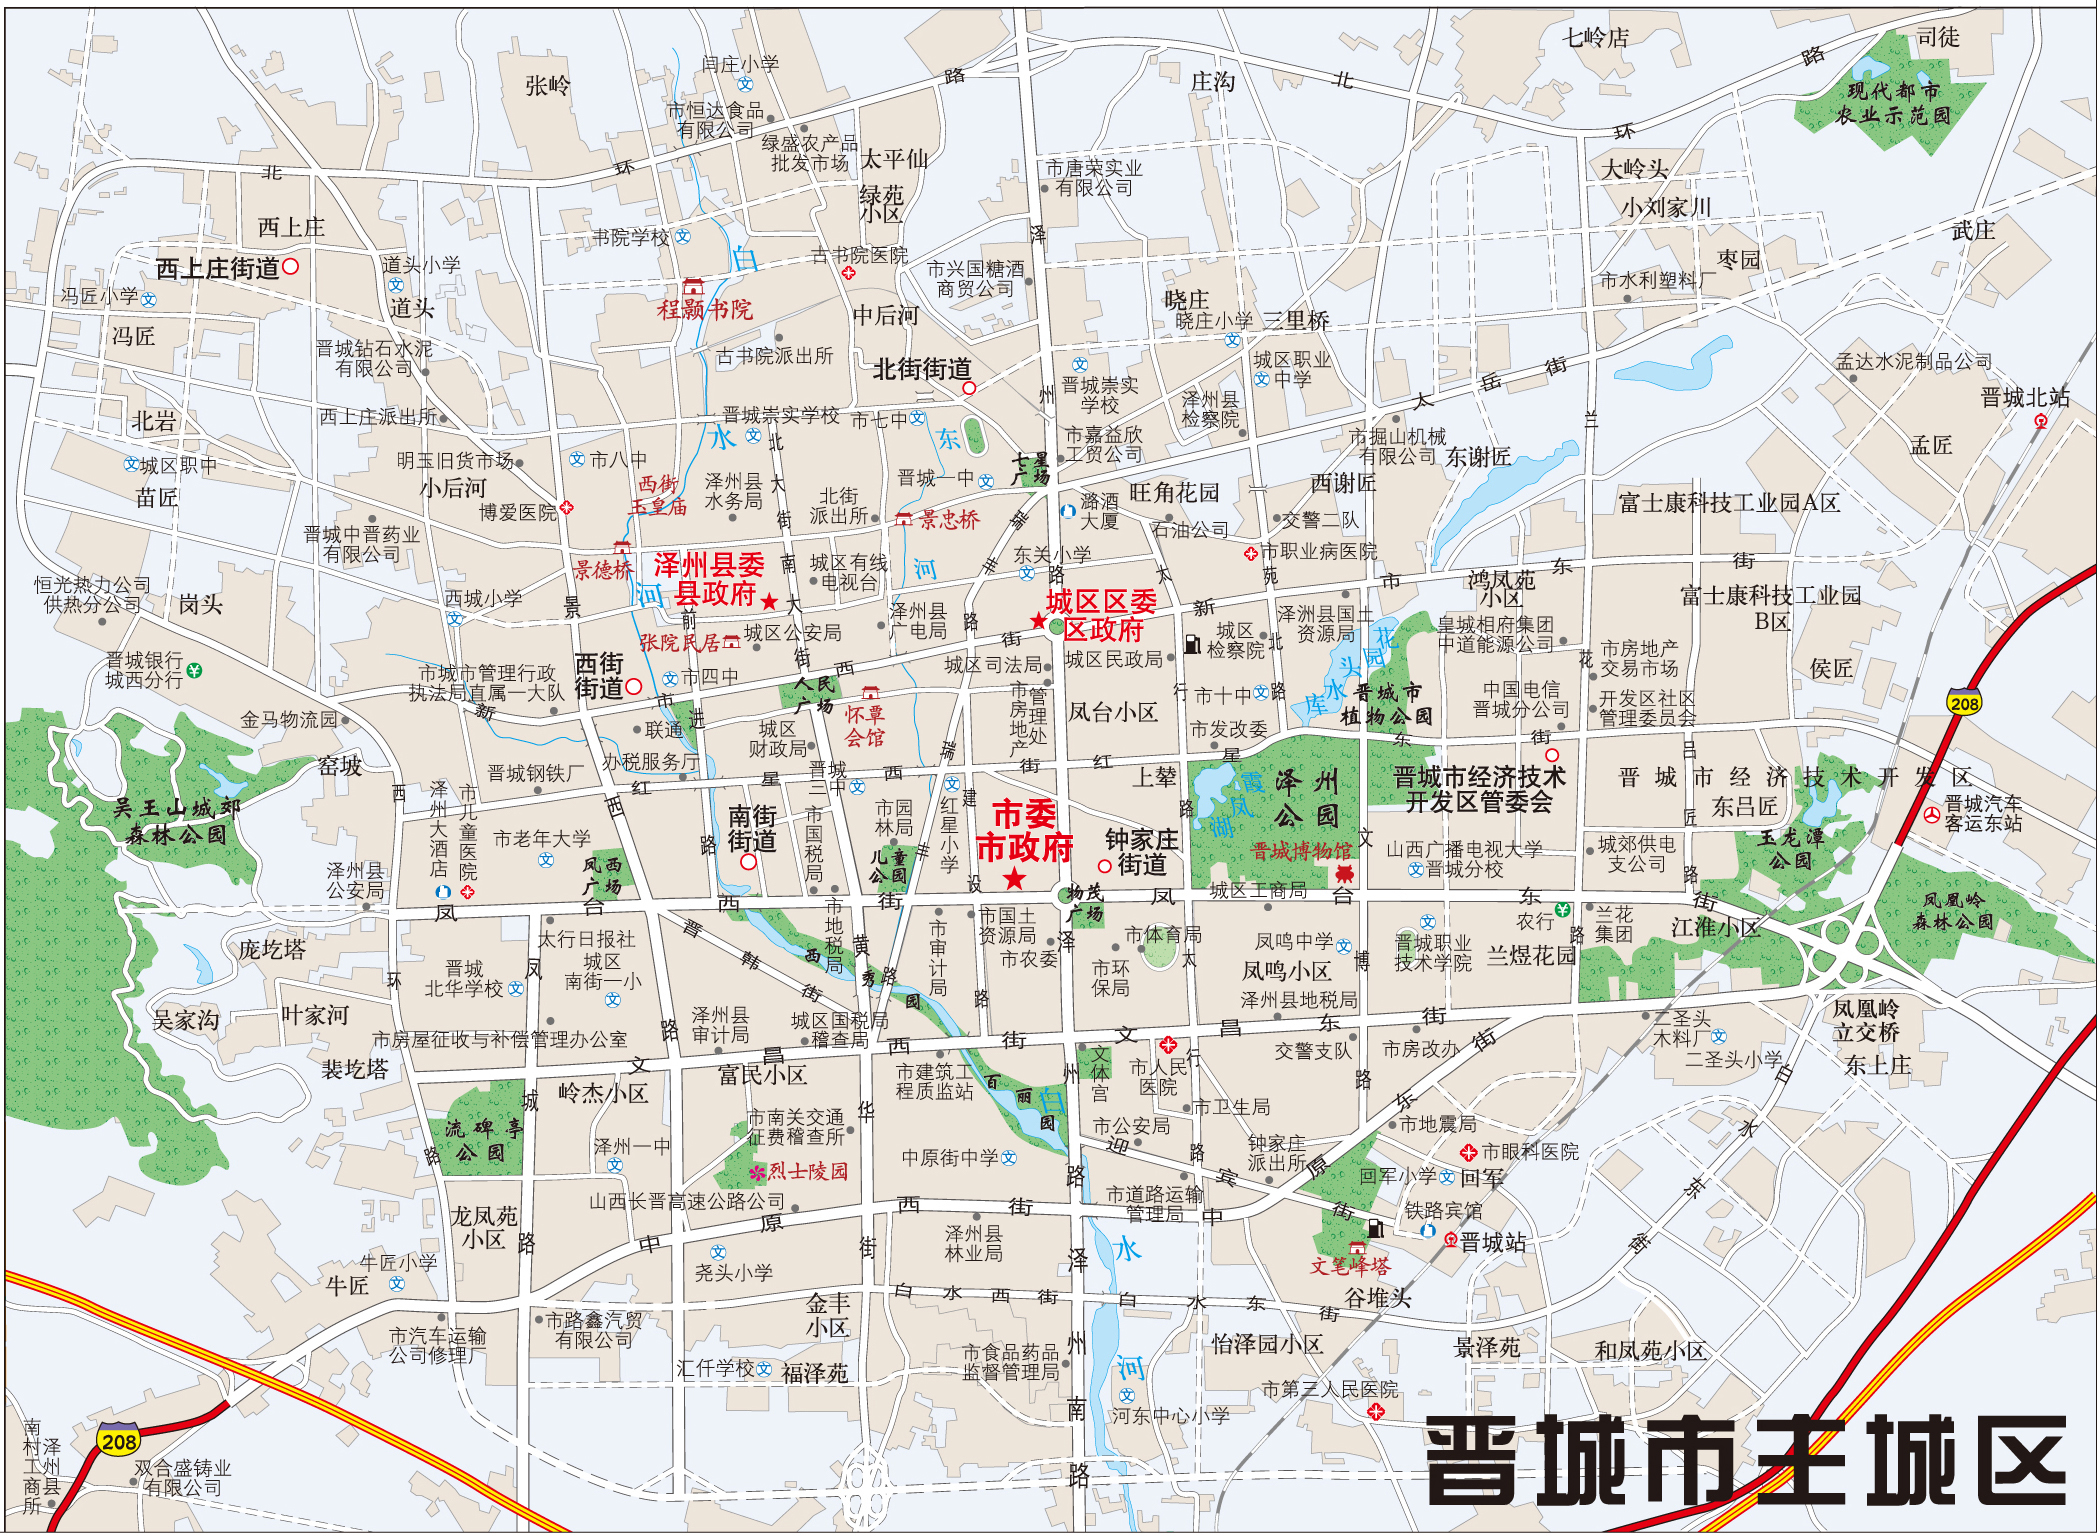 晋城地图 放大图片